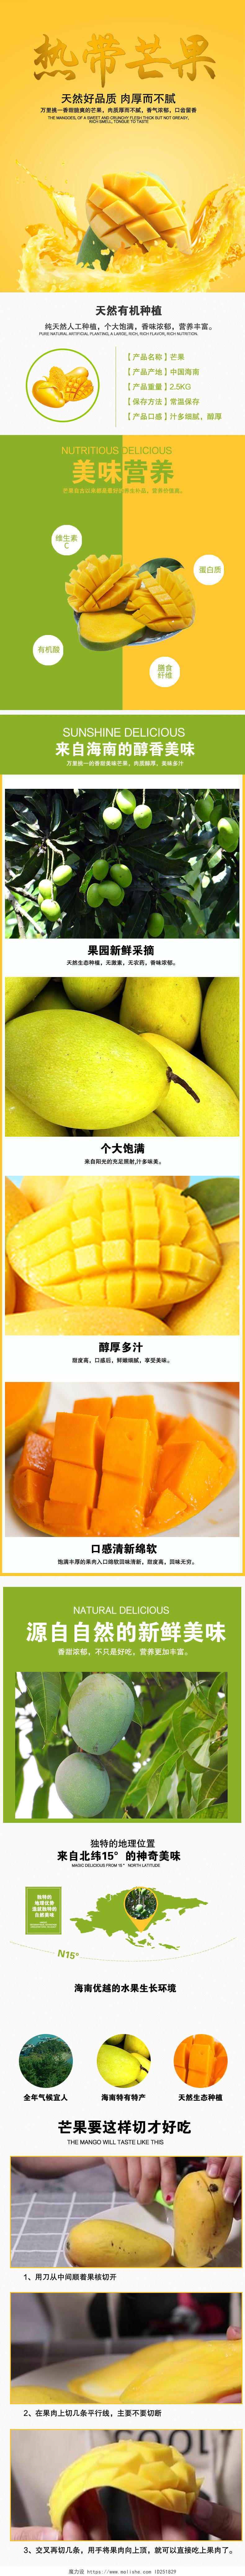 黄色酷炫热带芒果水果生鲜电商芒果手机端详情页